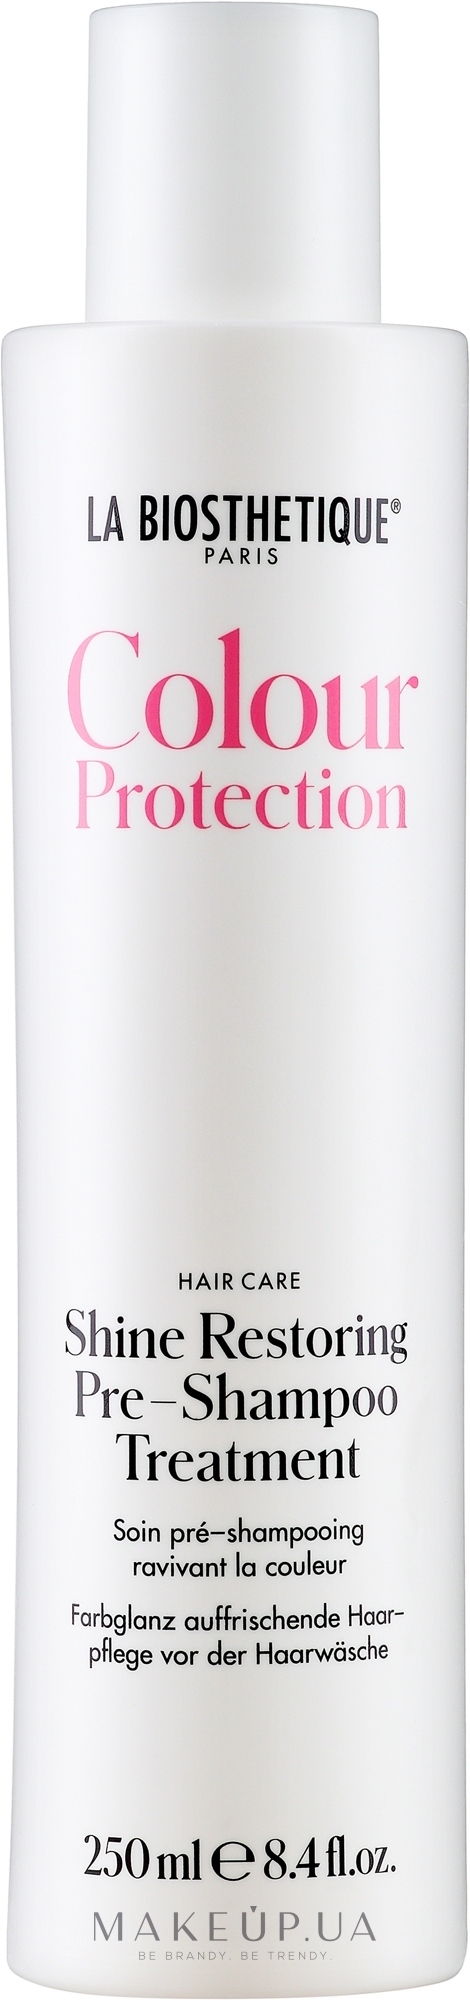 Уход за волосами перед мытьем для освежающего сияния цвета - La Biosthetique Colour Protection Shine Restoring Pre-Shampoo Treatment — фото 250ml